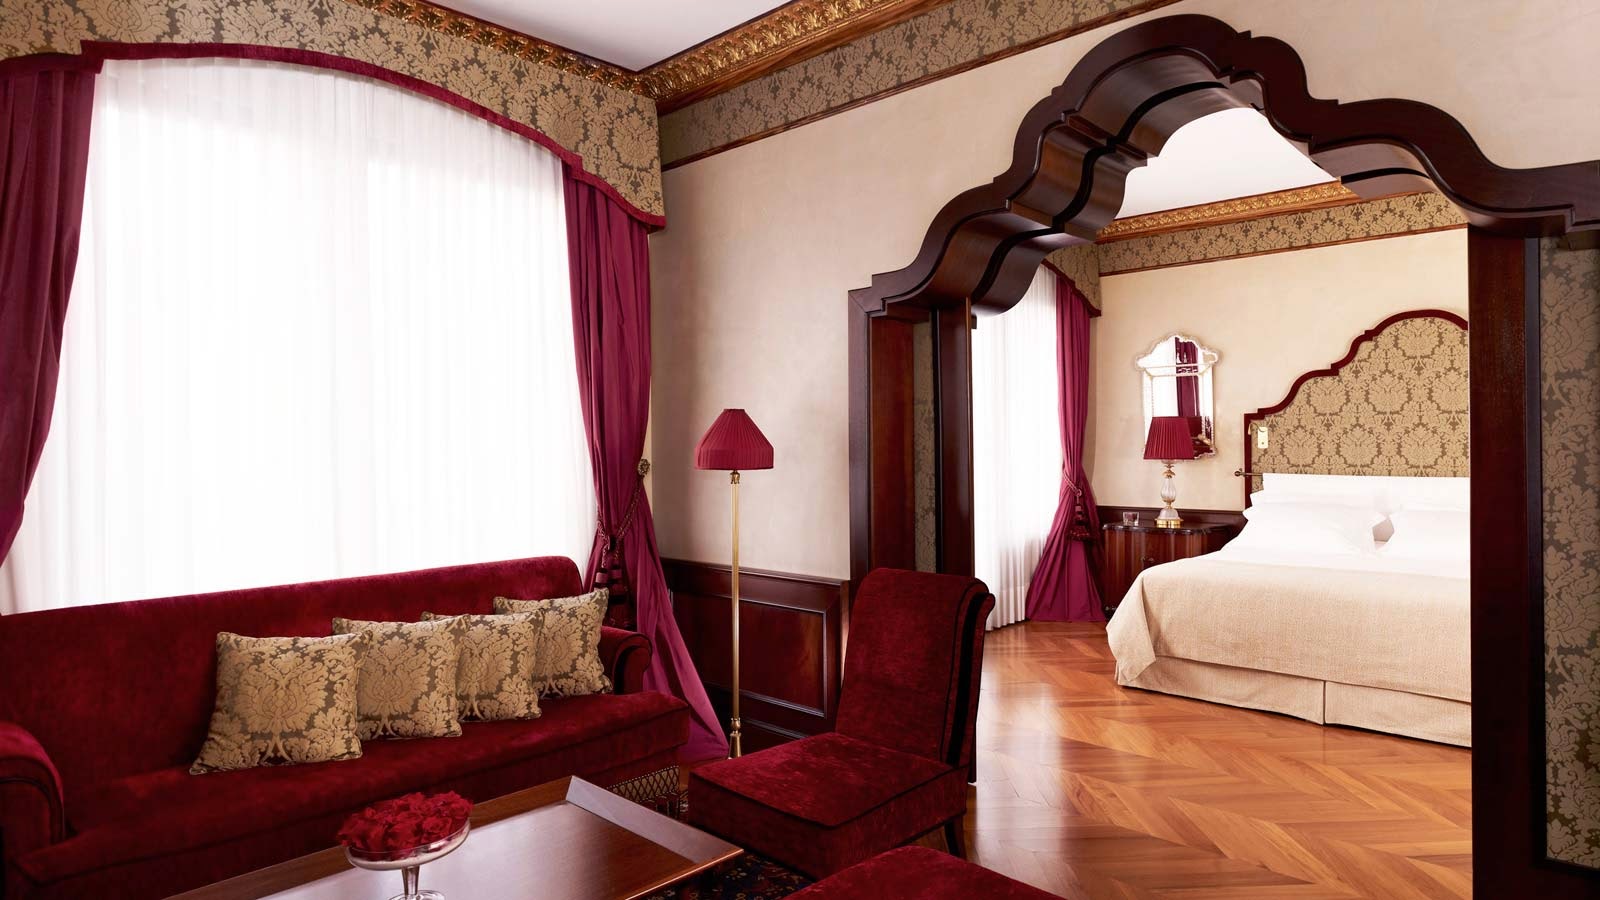 Venezia (Italia) - Hotel Danieli 5* - Hotel da Sogno